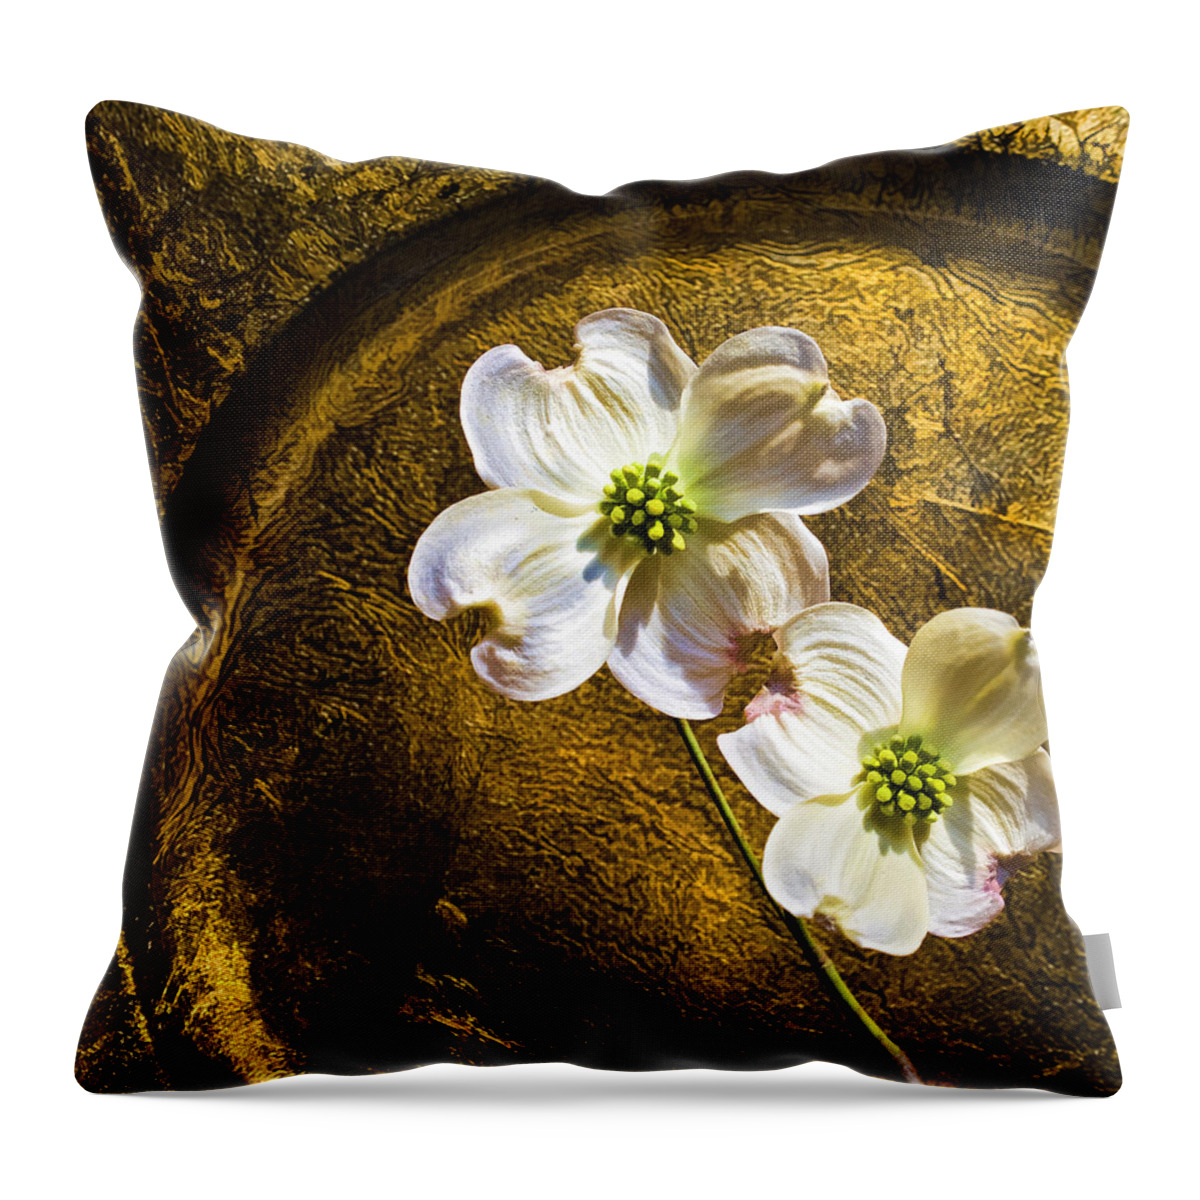 Golden Dogwood Throw Pillow featuring the photograph Golden Dogwood by Steven Richardson